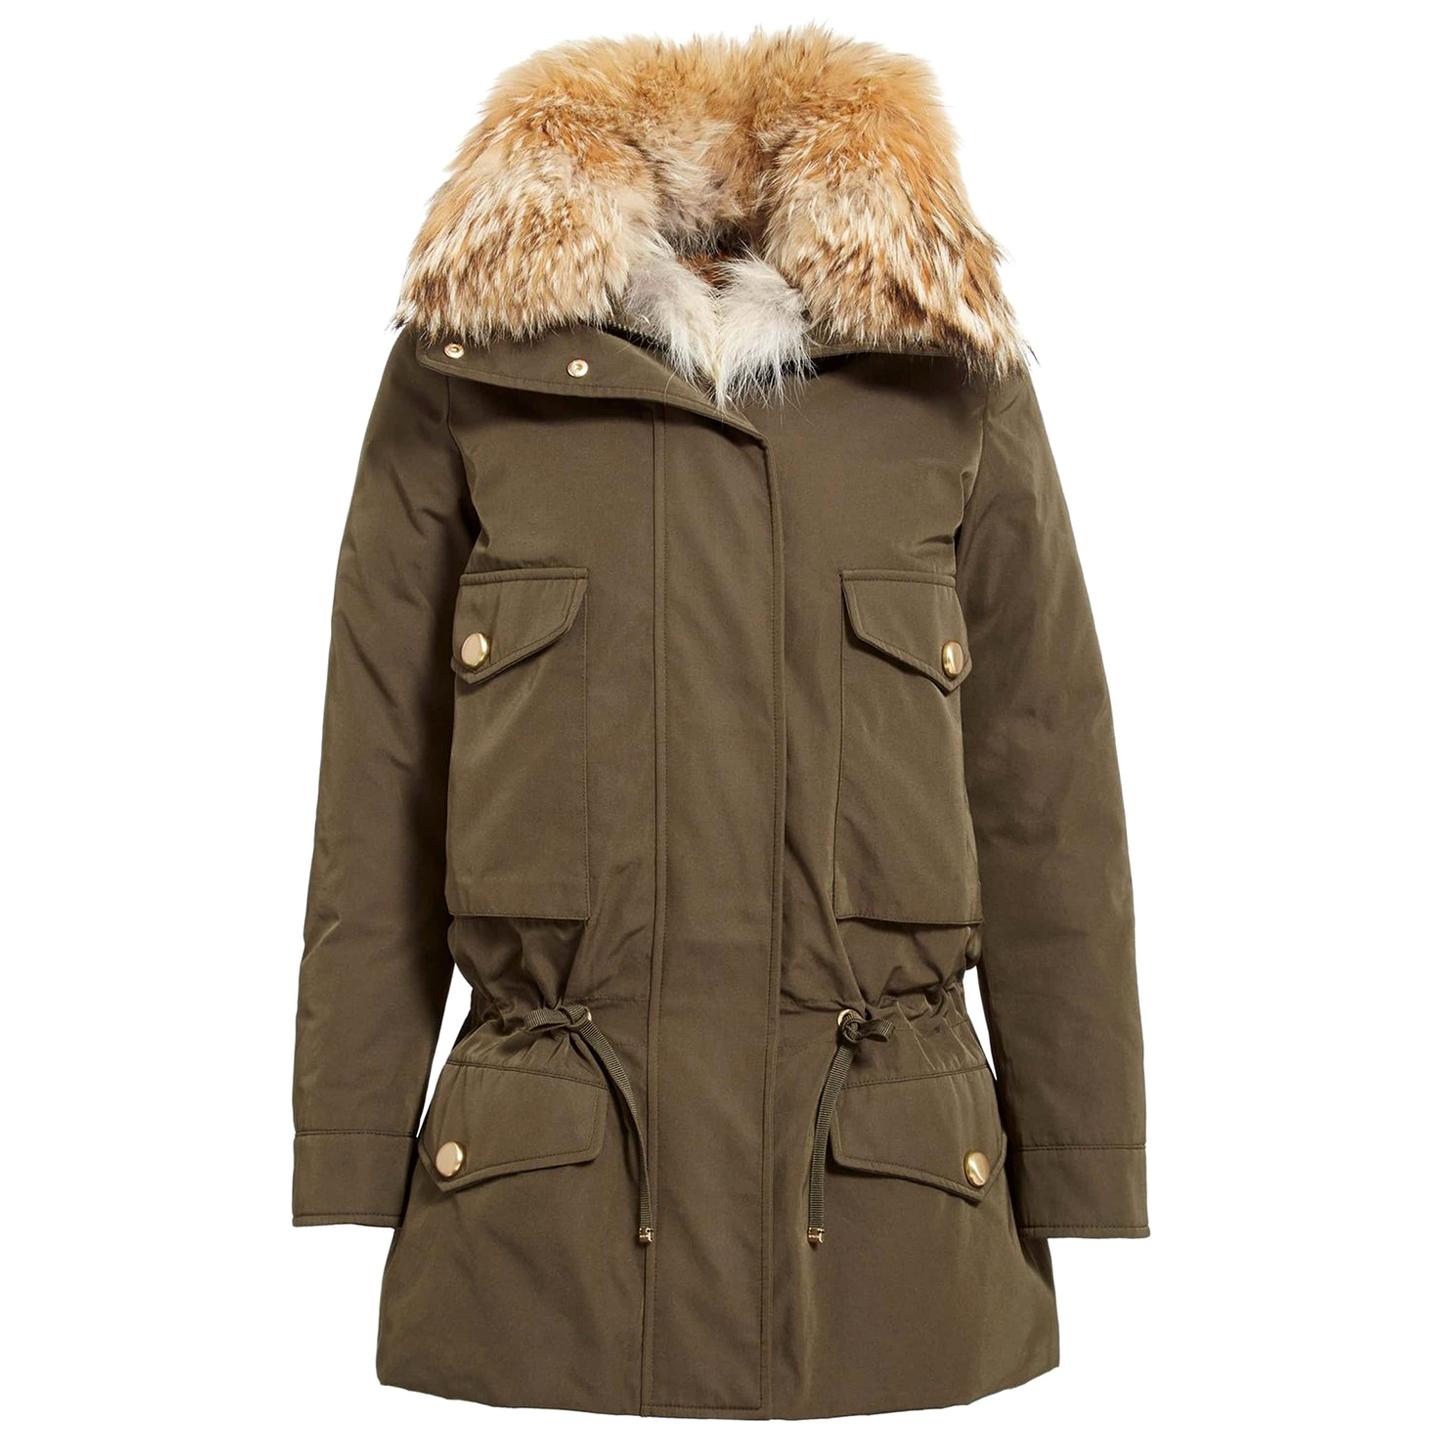 Moncler Margarita Coyote Fur-Trimmed Jacket and Rabbit Fur Vest 